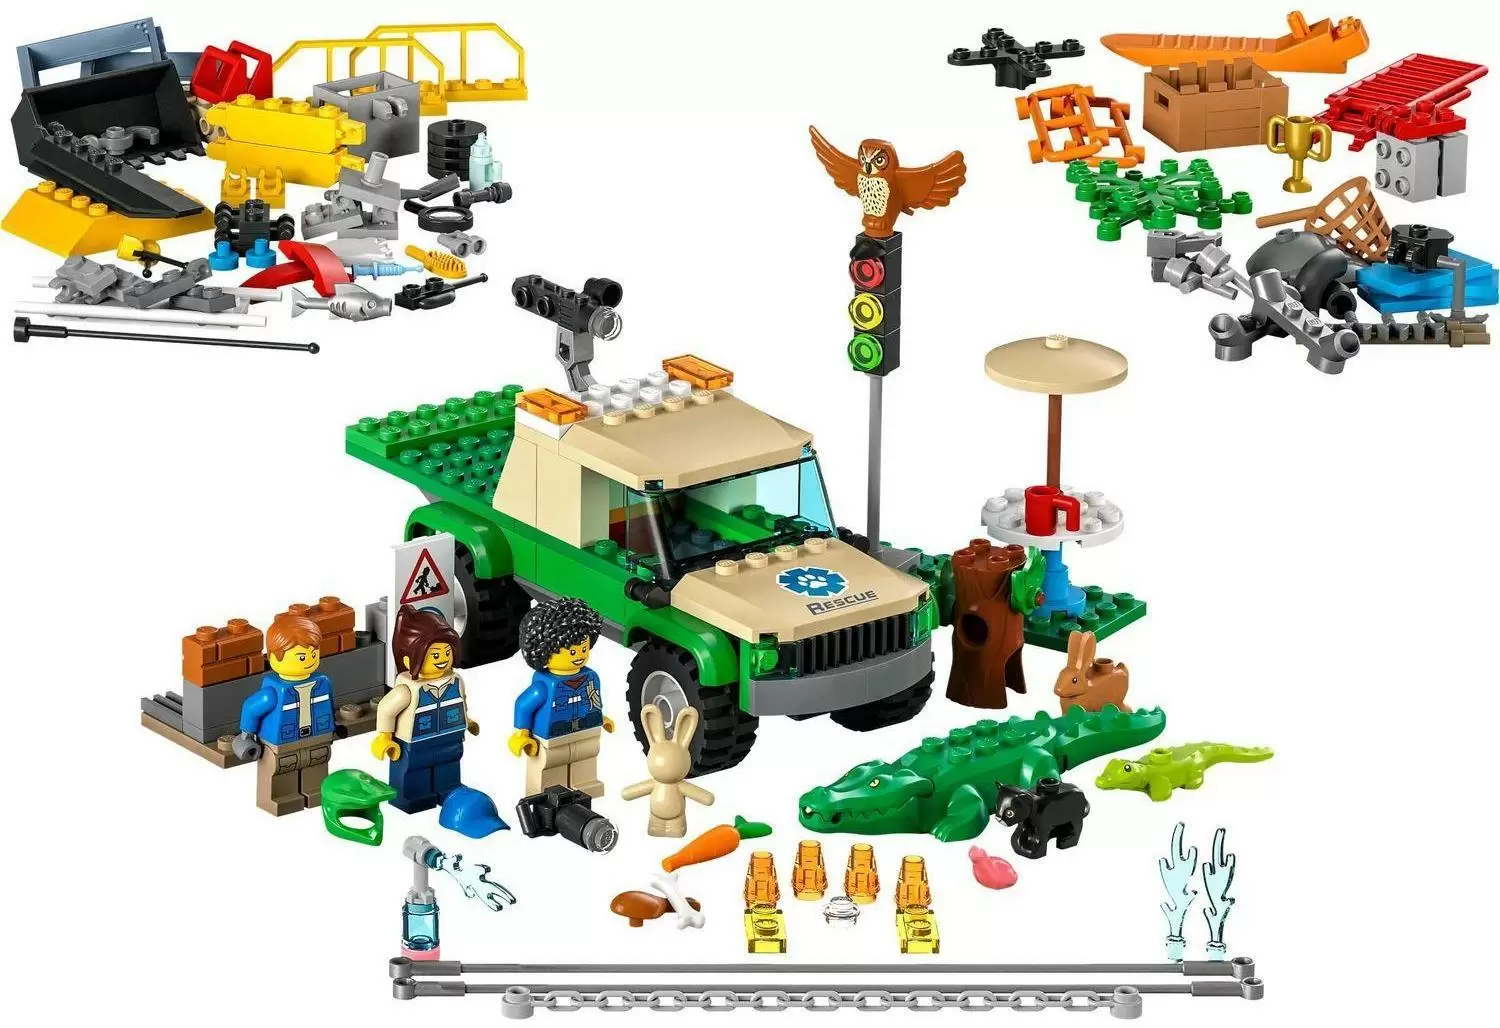 Конструктор LEGO City Миссии по спасению диких животных кор